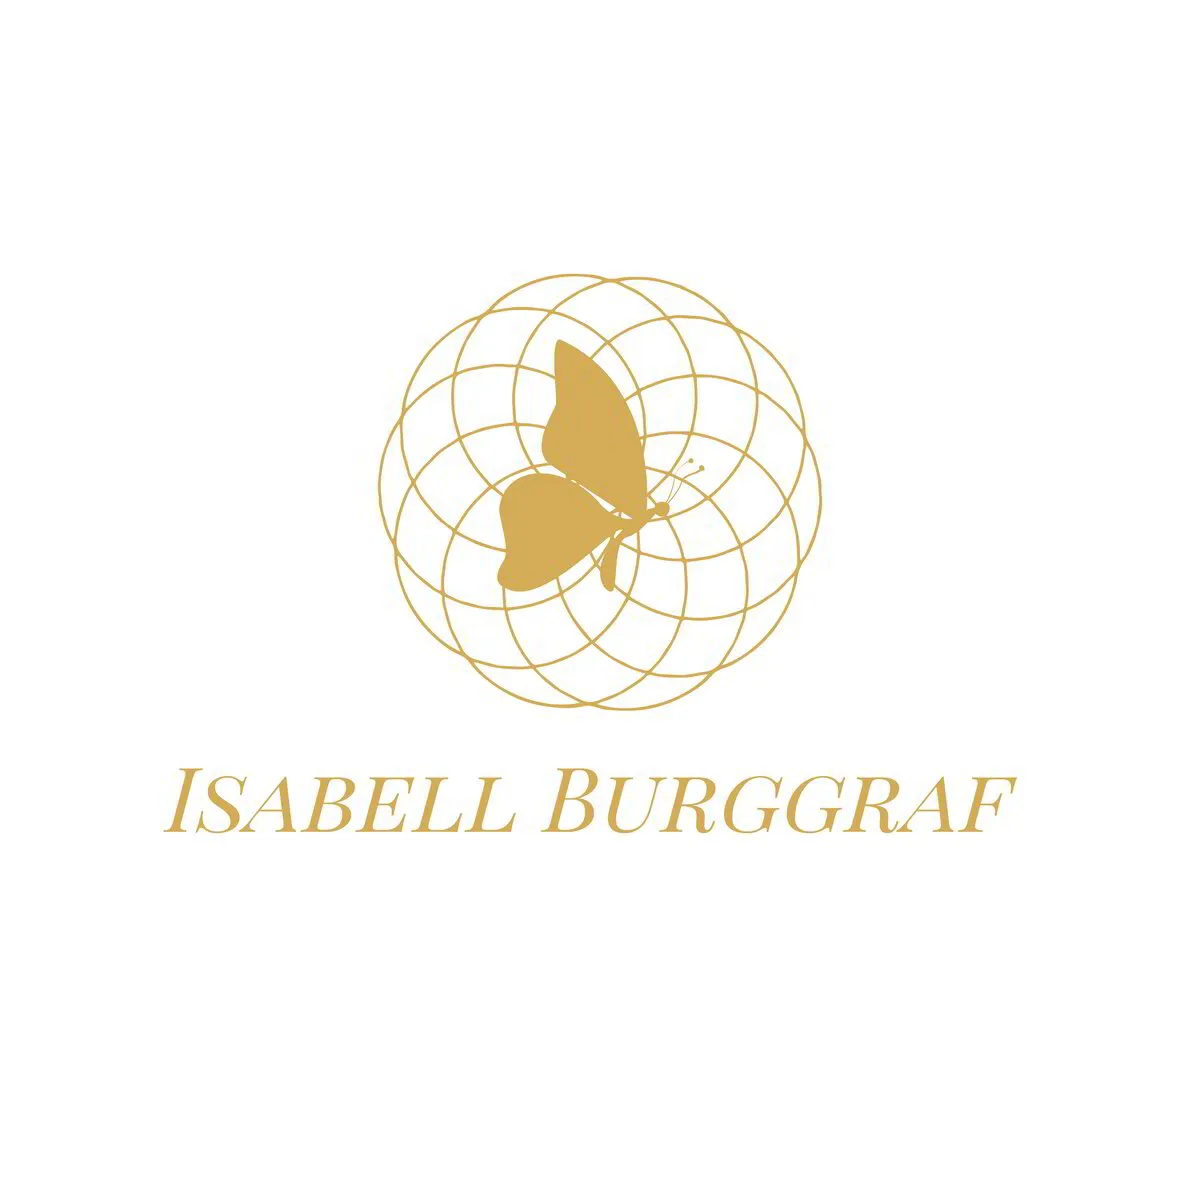 Isabell Burggraf